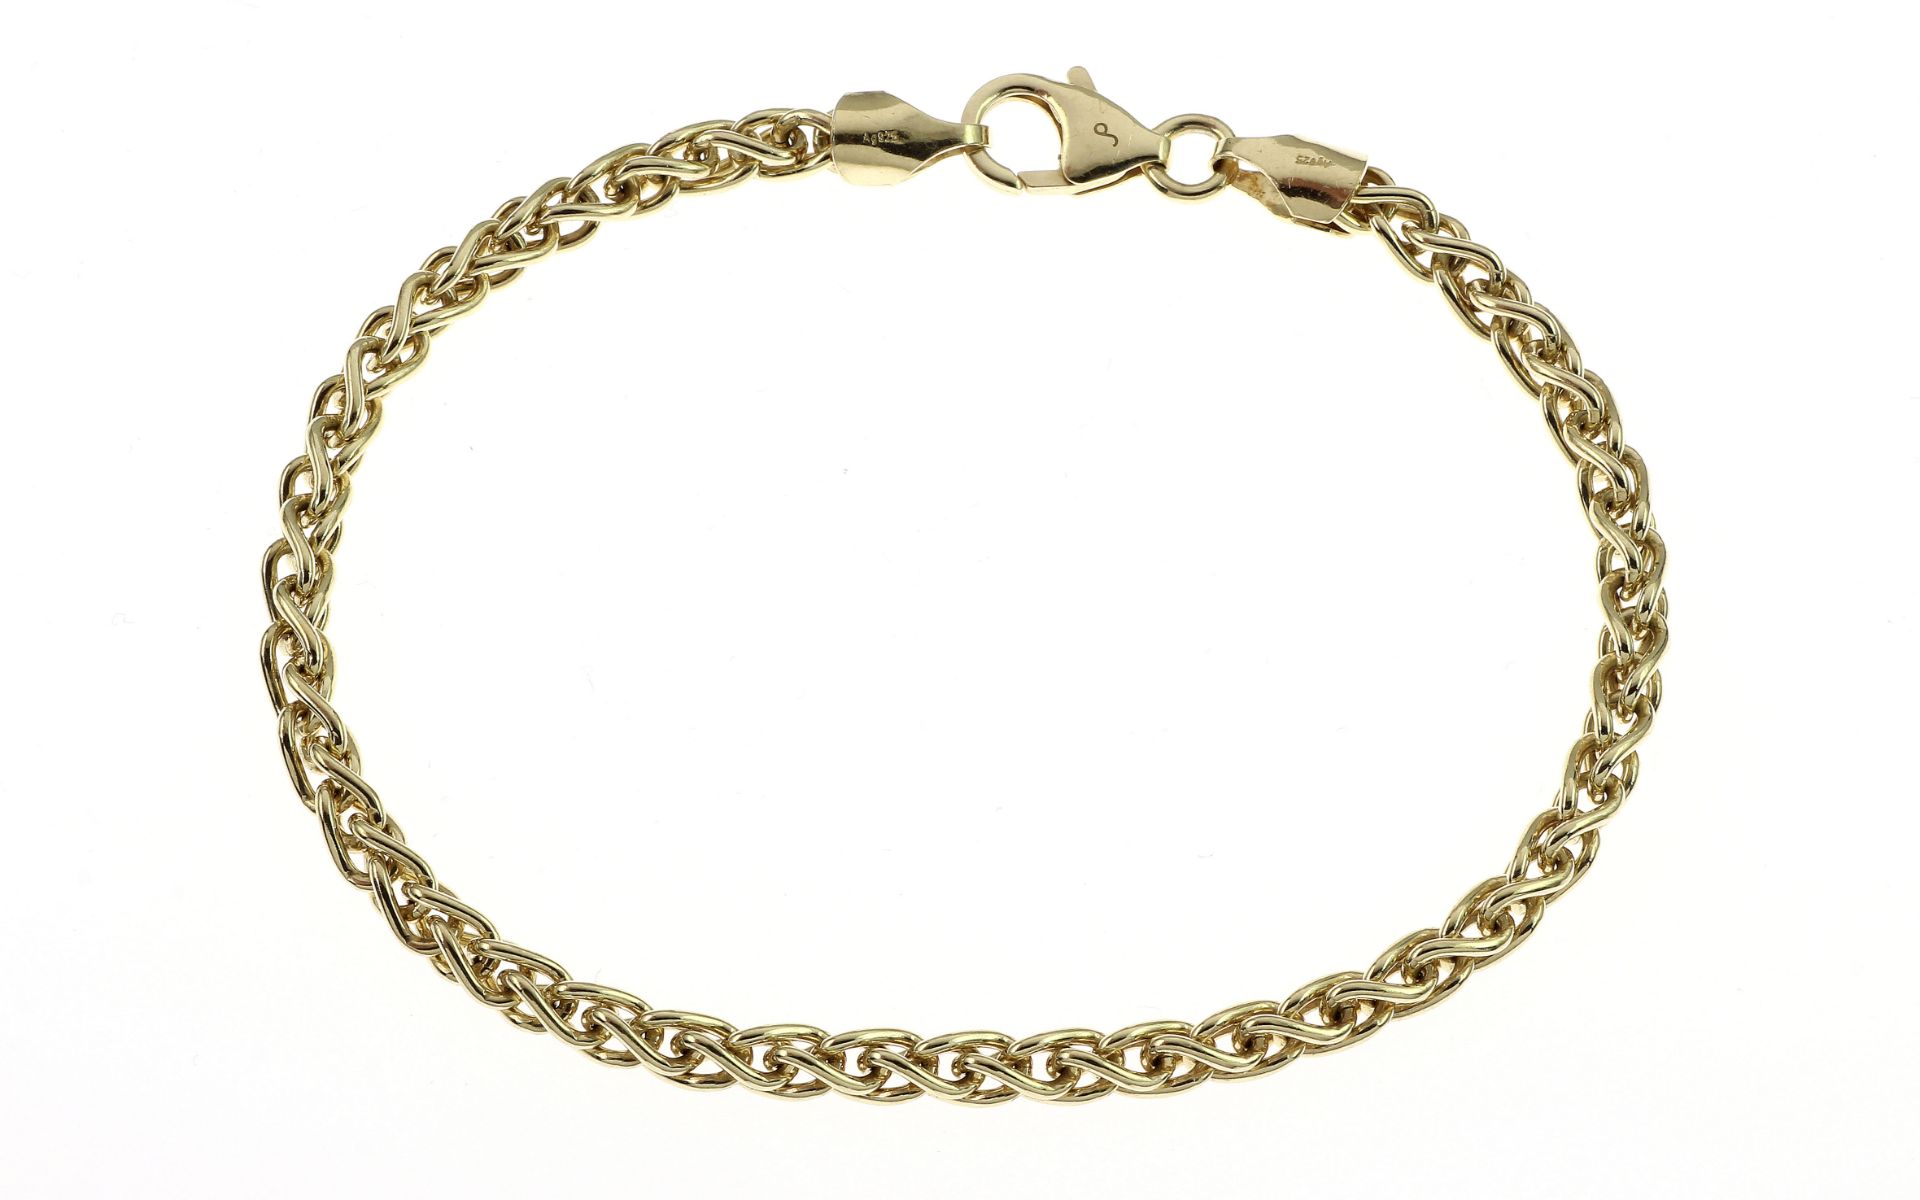 Armband 11.13g 925/- Silber vergoldet. Laenge ca. 21 cm